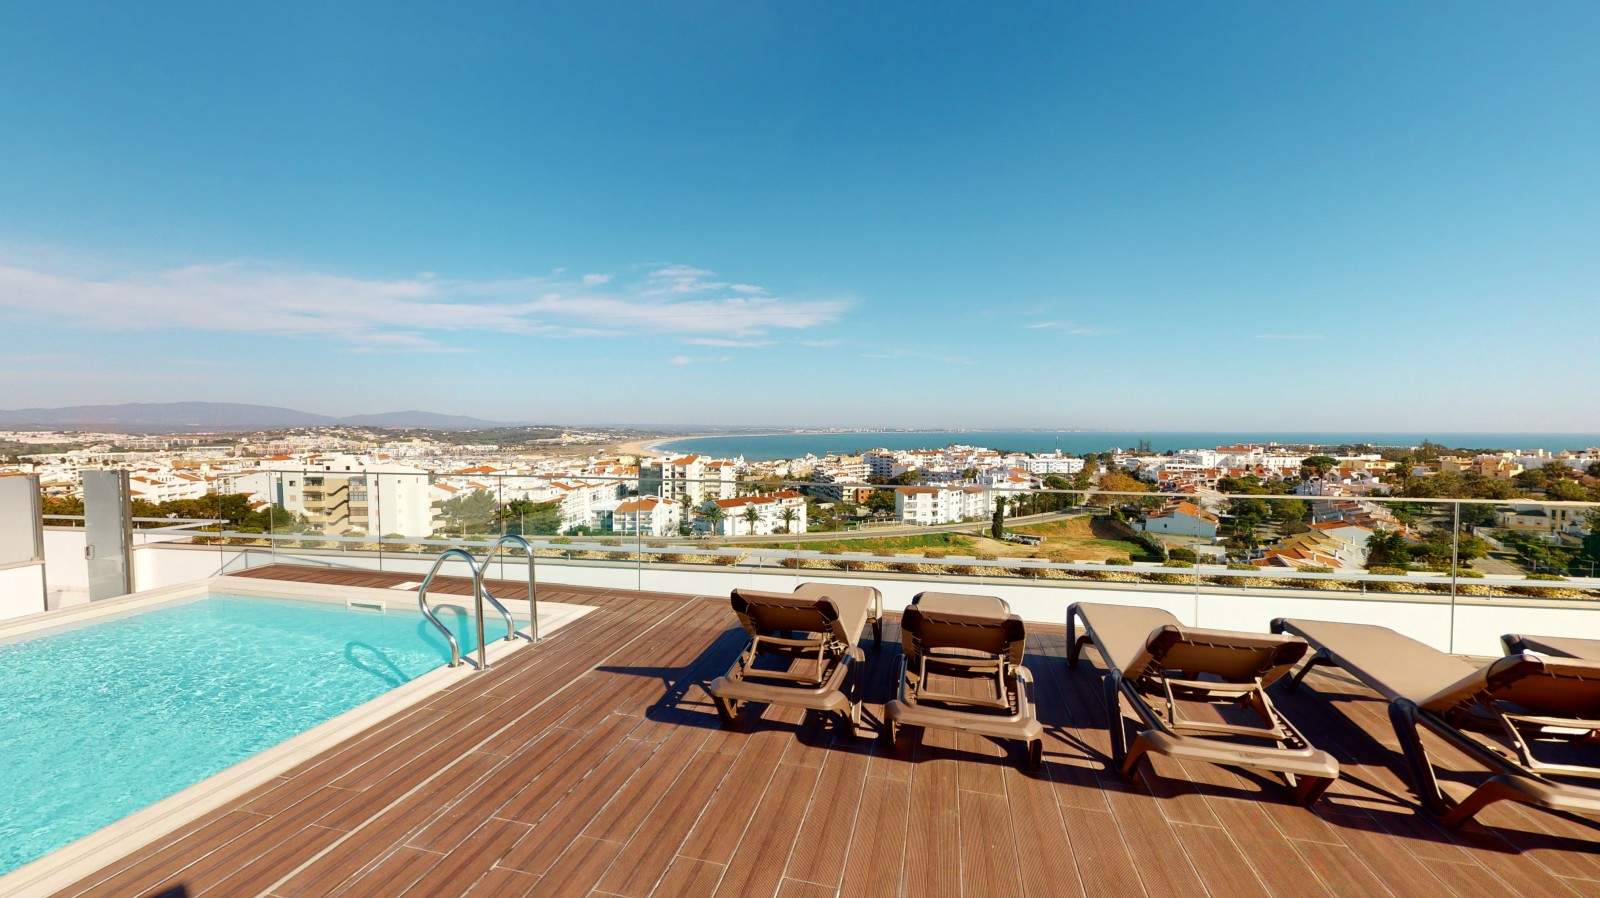 Venta de ático nuevo, piscina y vistas al mar, Lagos, Algarve,Portugal_208286